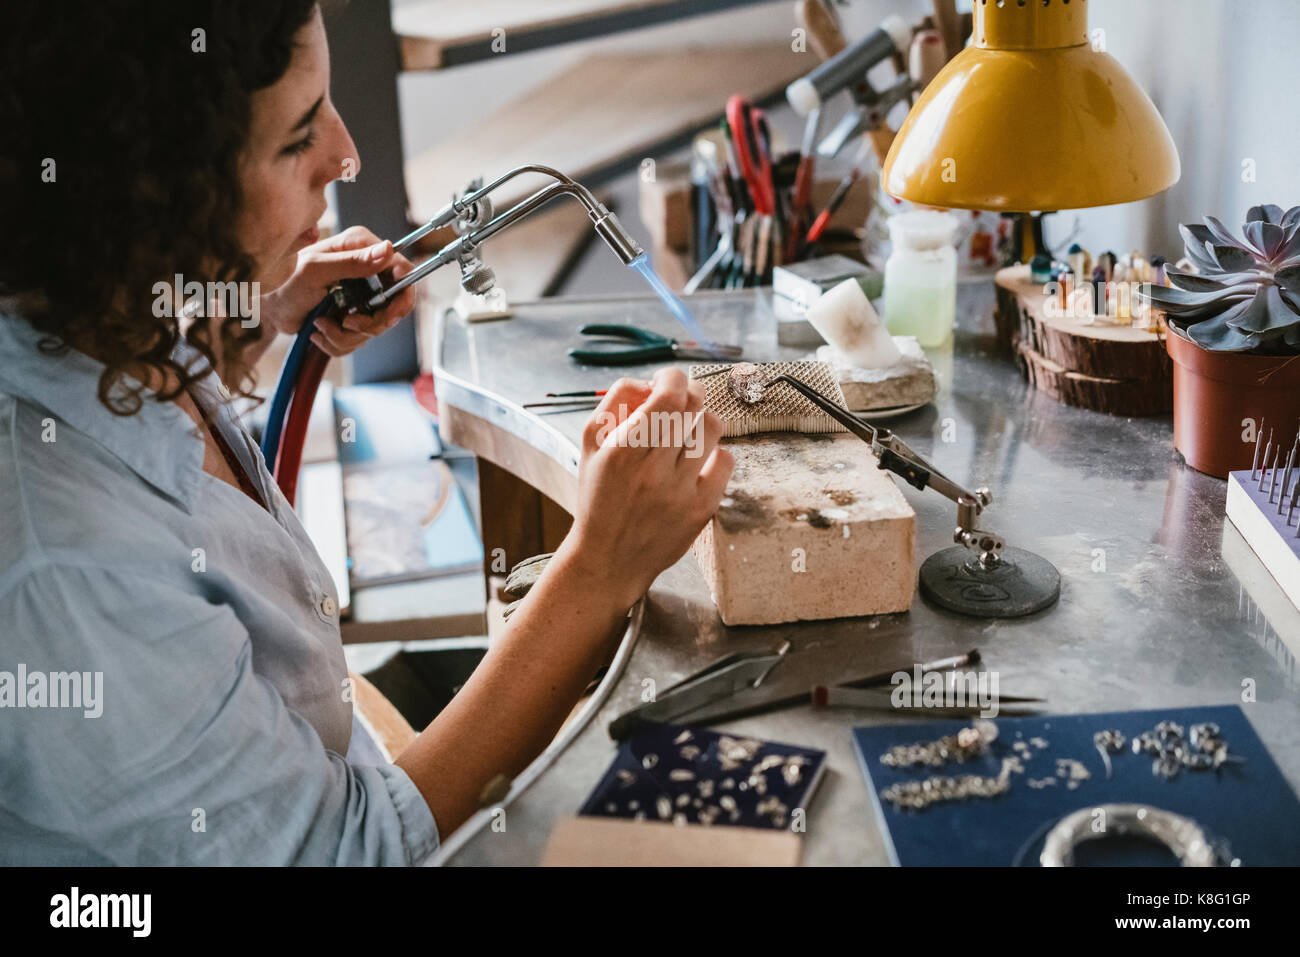 Il gioielliere femmina con torcia soffiante al banco di lavoro Foto Stock